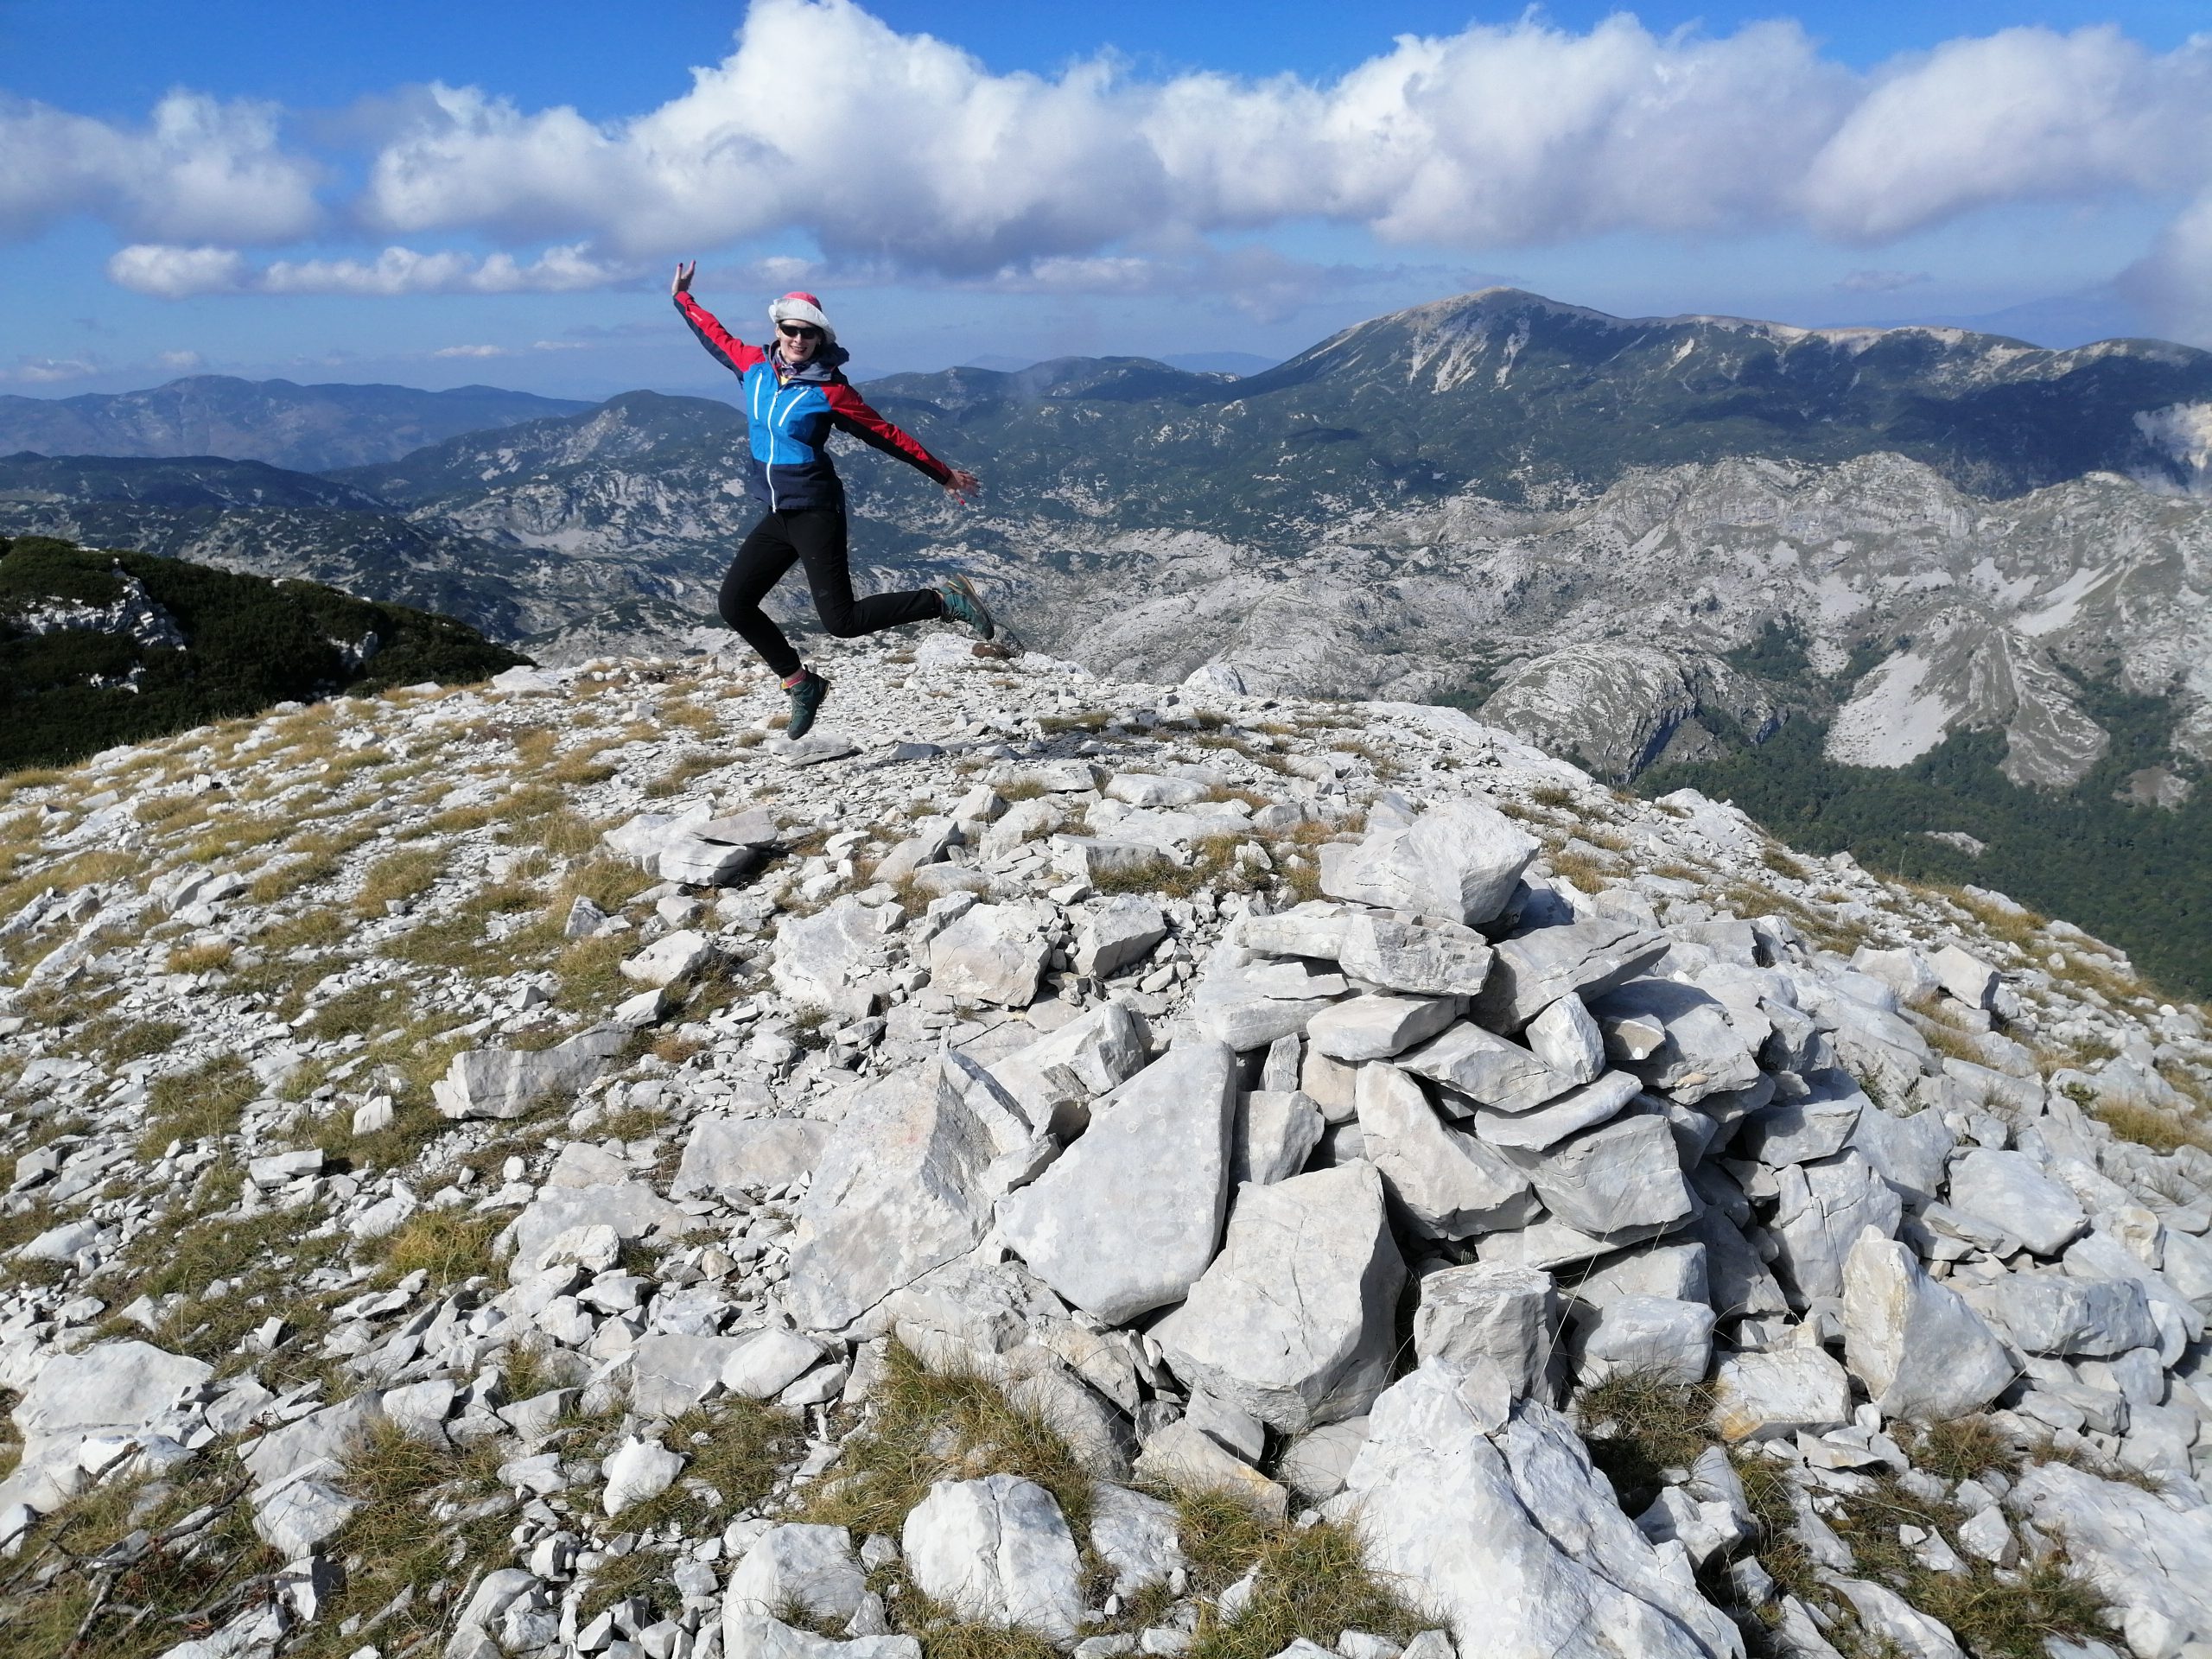  Sarajka ispela 78 najviših vrhova u Bosni i Hercegovini